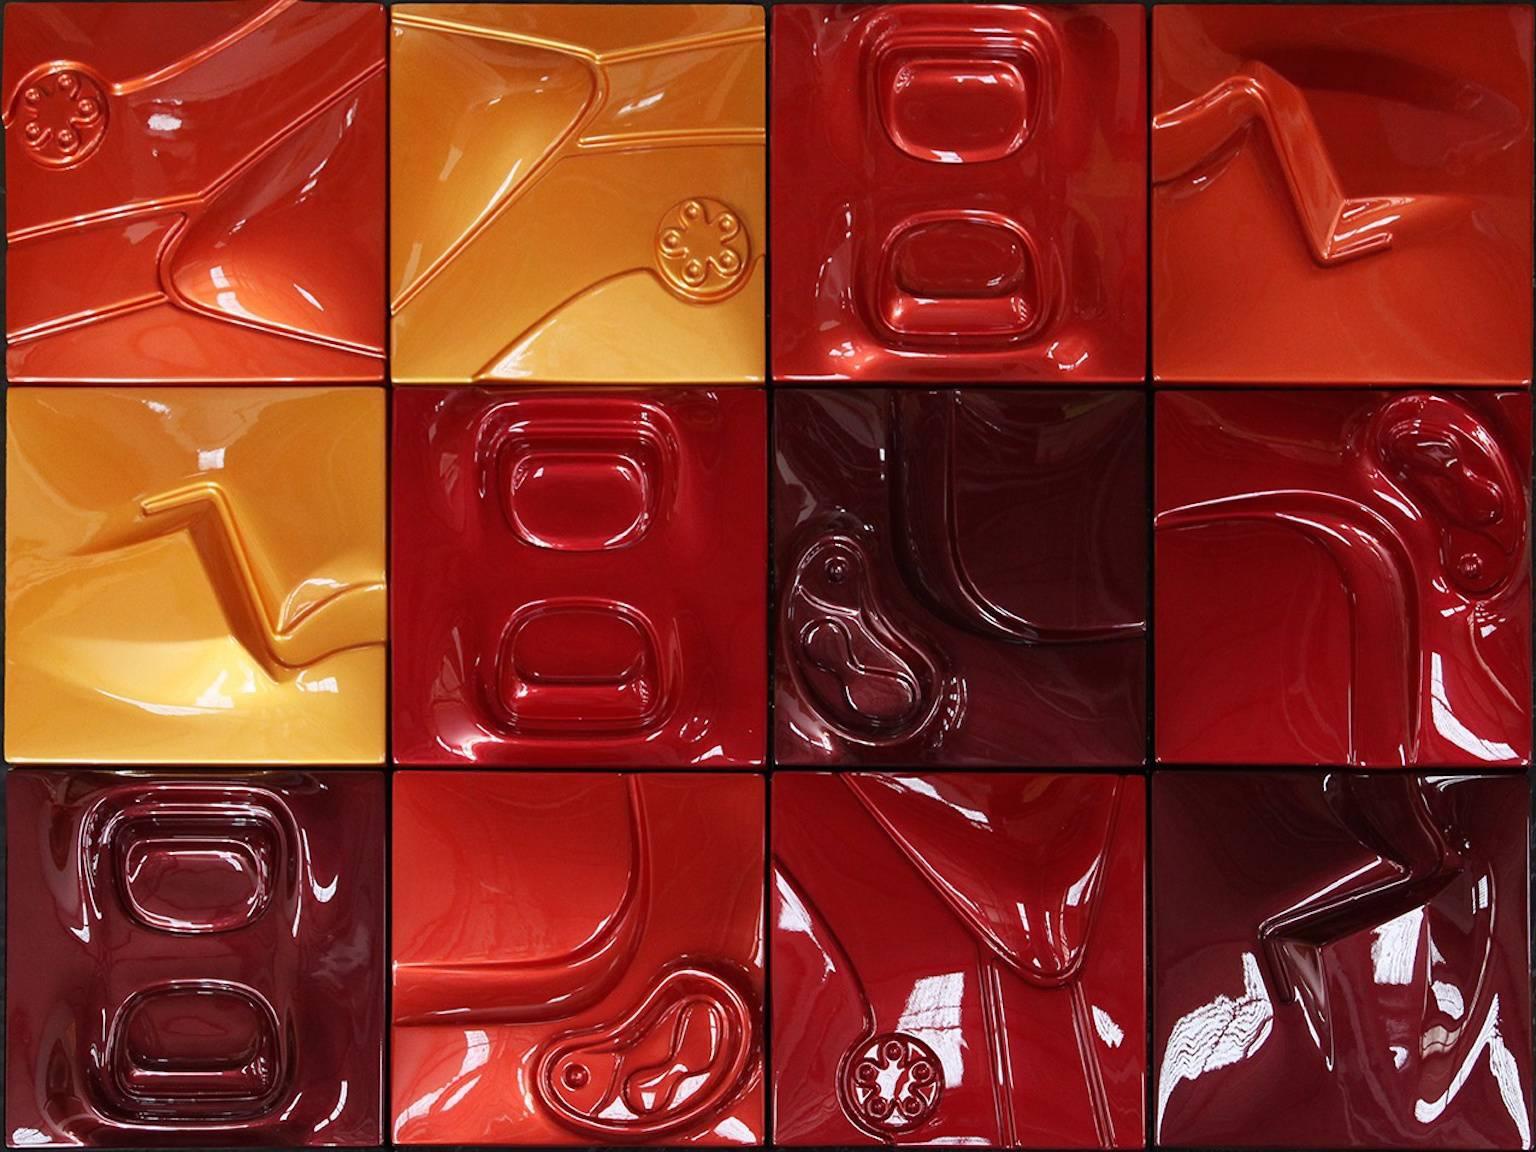 Crimson Flux - Sculpture by Patricia Piccinini